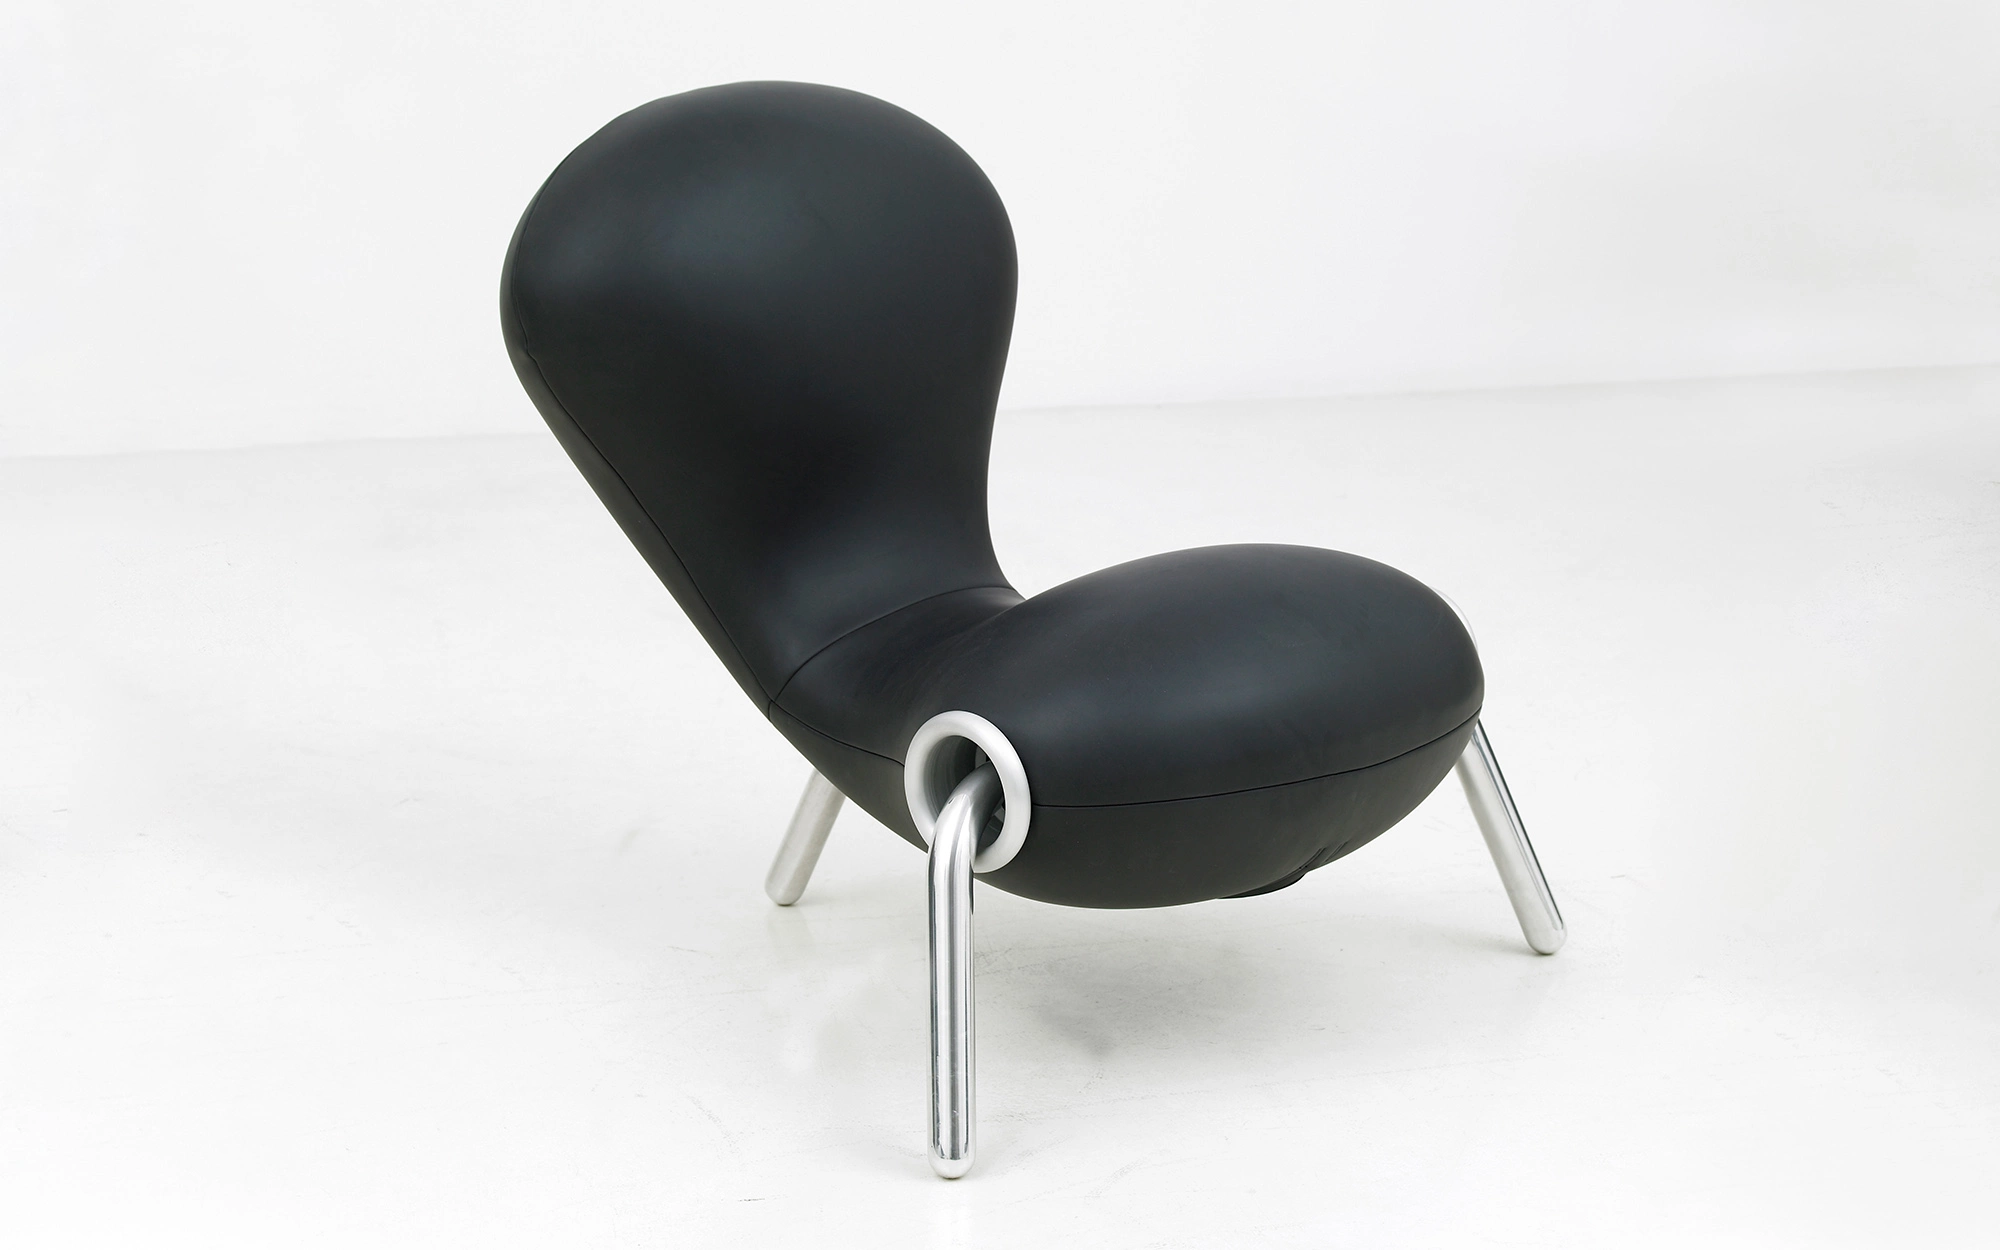 Embryo Chair - Marc Newson - Lucas Ratton x kamel mennour x Galerie kreo x Jacques Lacoste in Saint-Tropez.